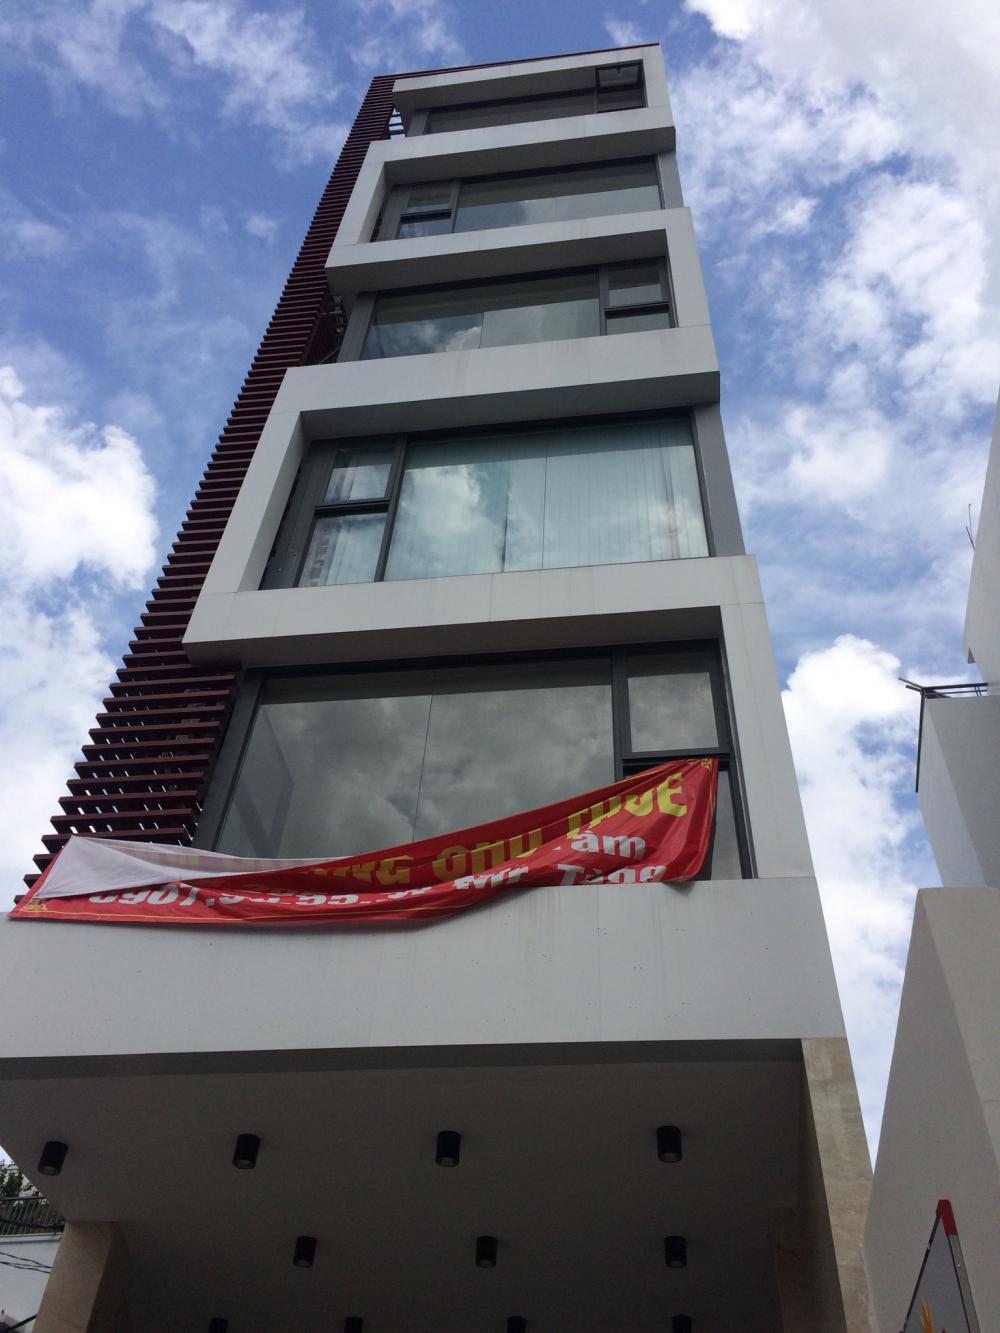 Văn phòng cho thuê giá rẻ tòa nhà WINHOME Q. Phú Nhuận , DT 58m2 giá 19tr/th. Quản lý: 093 412 4102